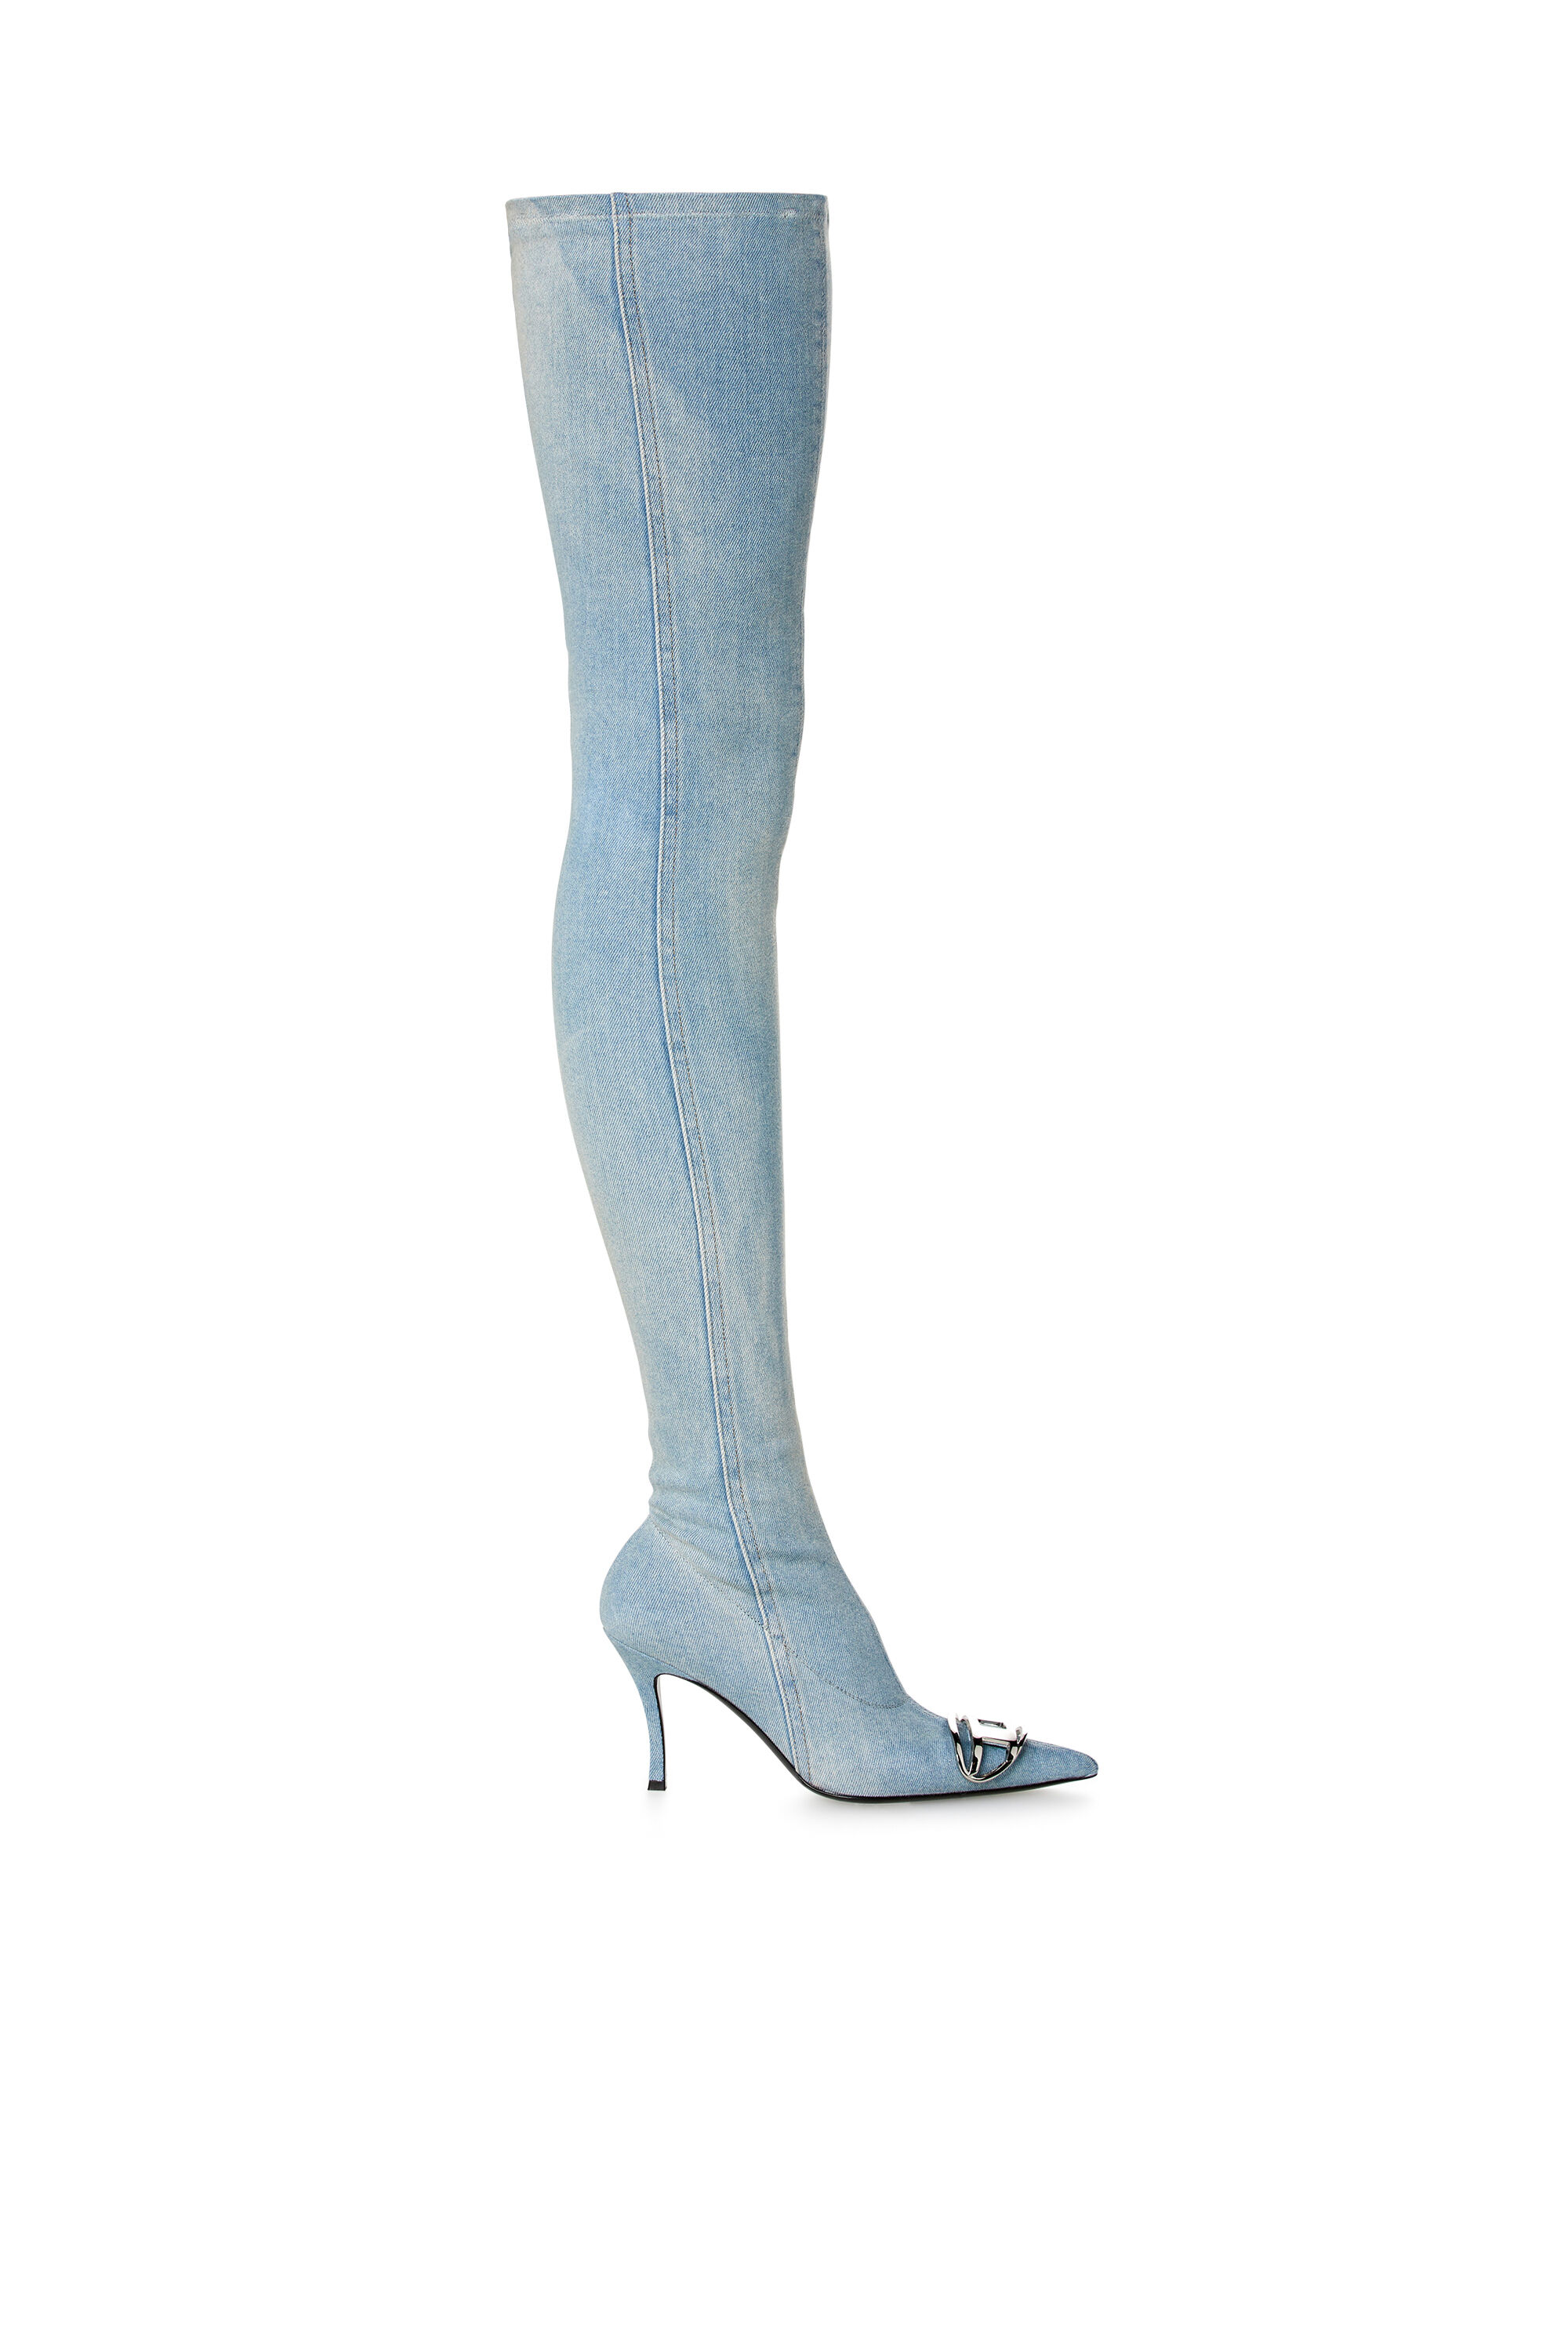 Diesel - D-VENUS TBT D, Mujer D-Venus-Botas por encima de la rodilla en denim desteñido in Azul marino - Image 1